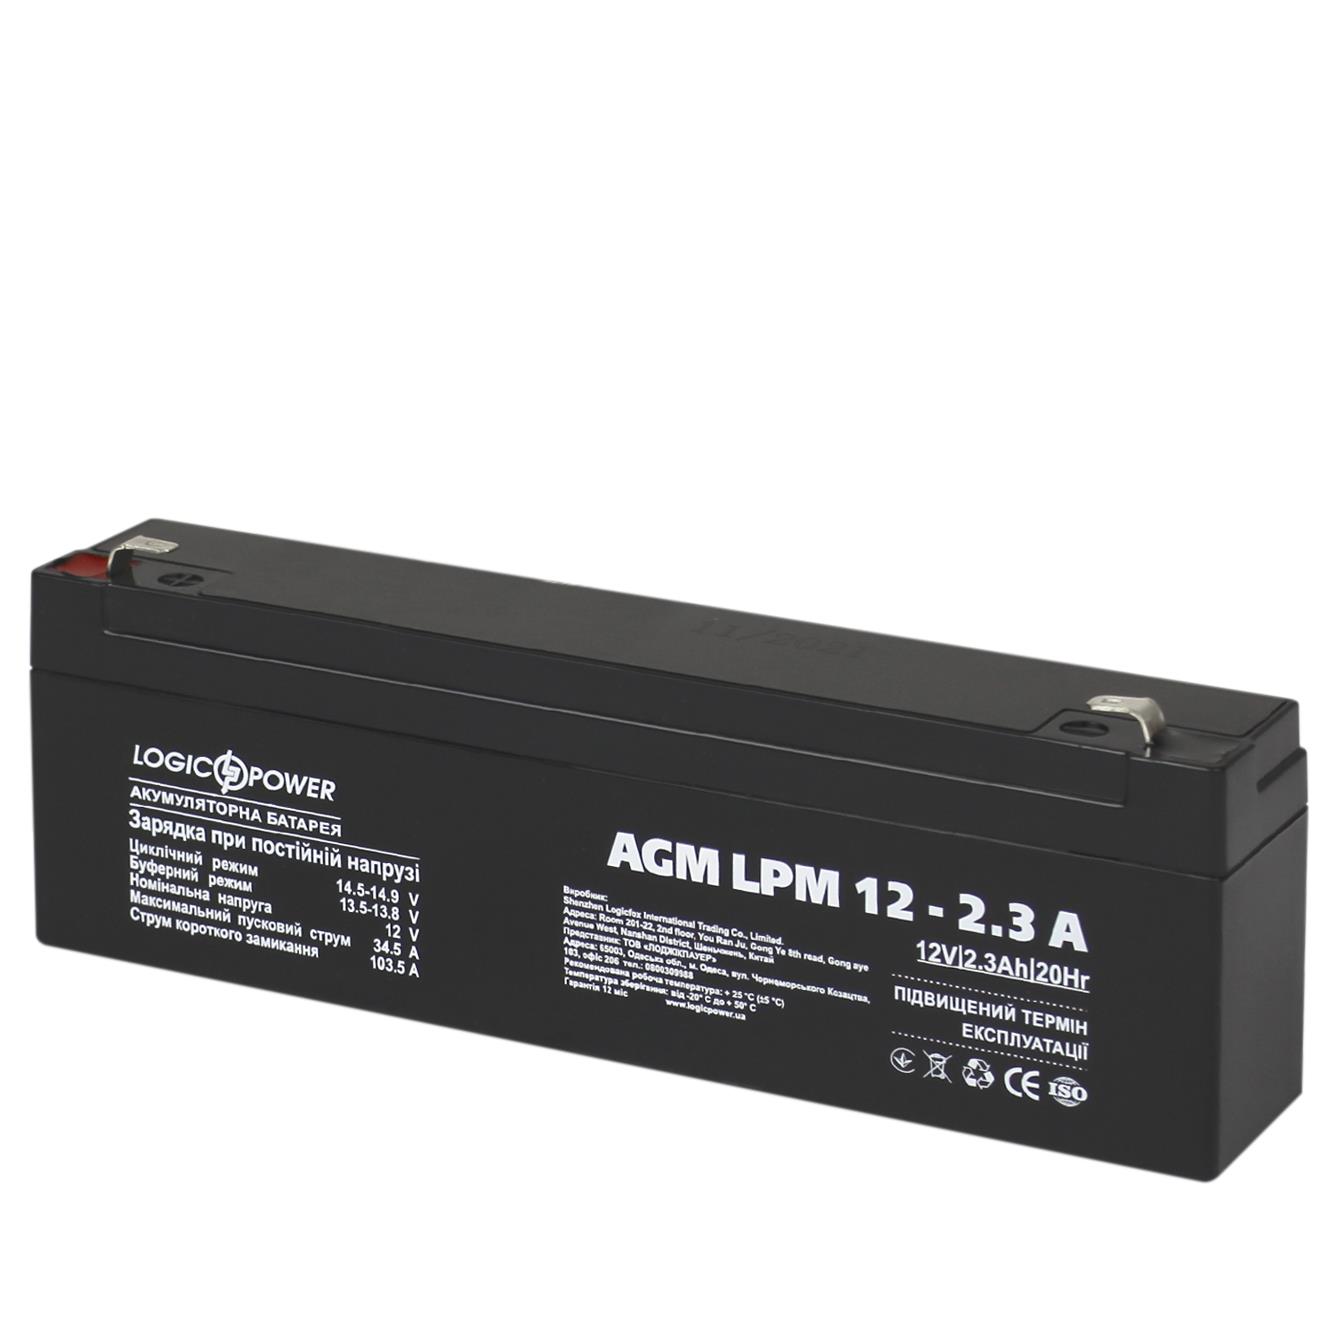 Купить аккумулятор свинцово-кислотный LogicPower AGM LPM 12V - 2.3 Ah (4132) в Днепре